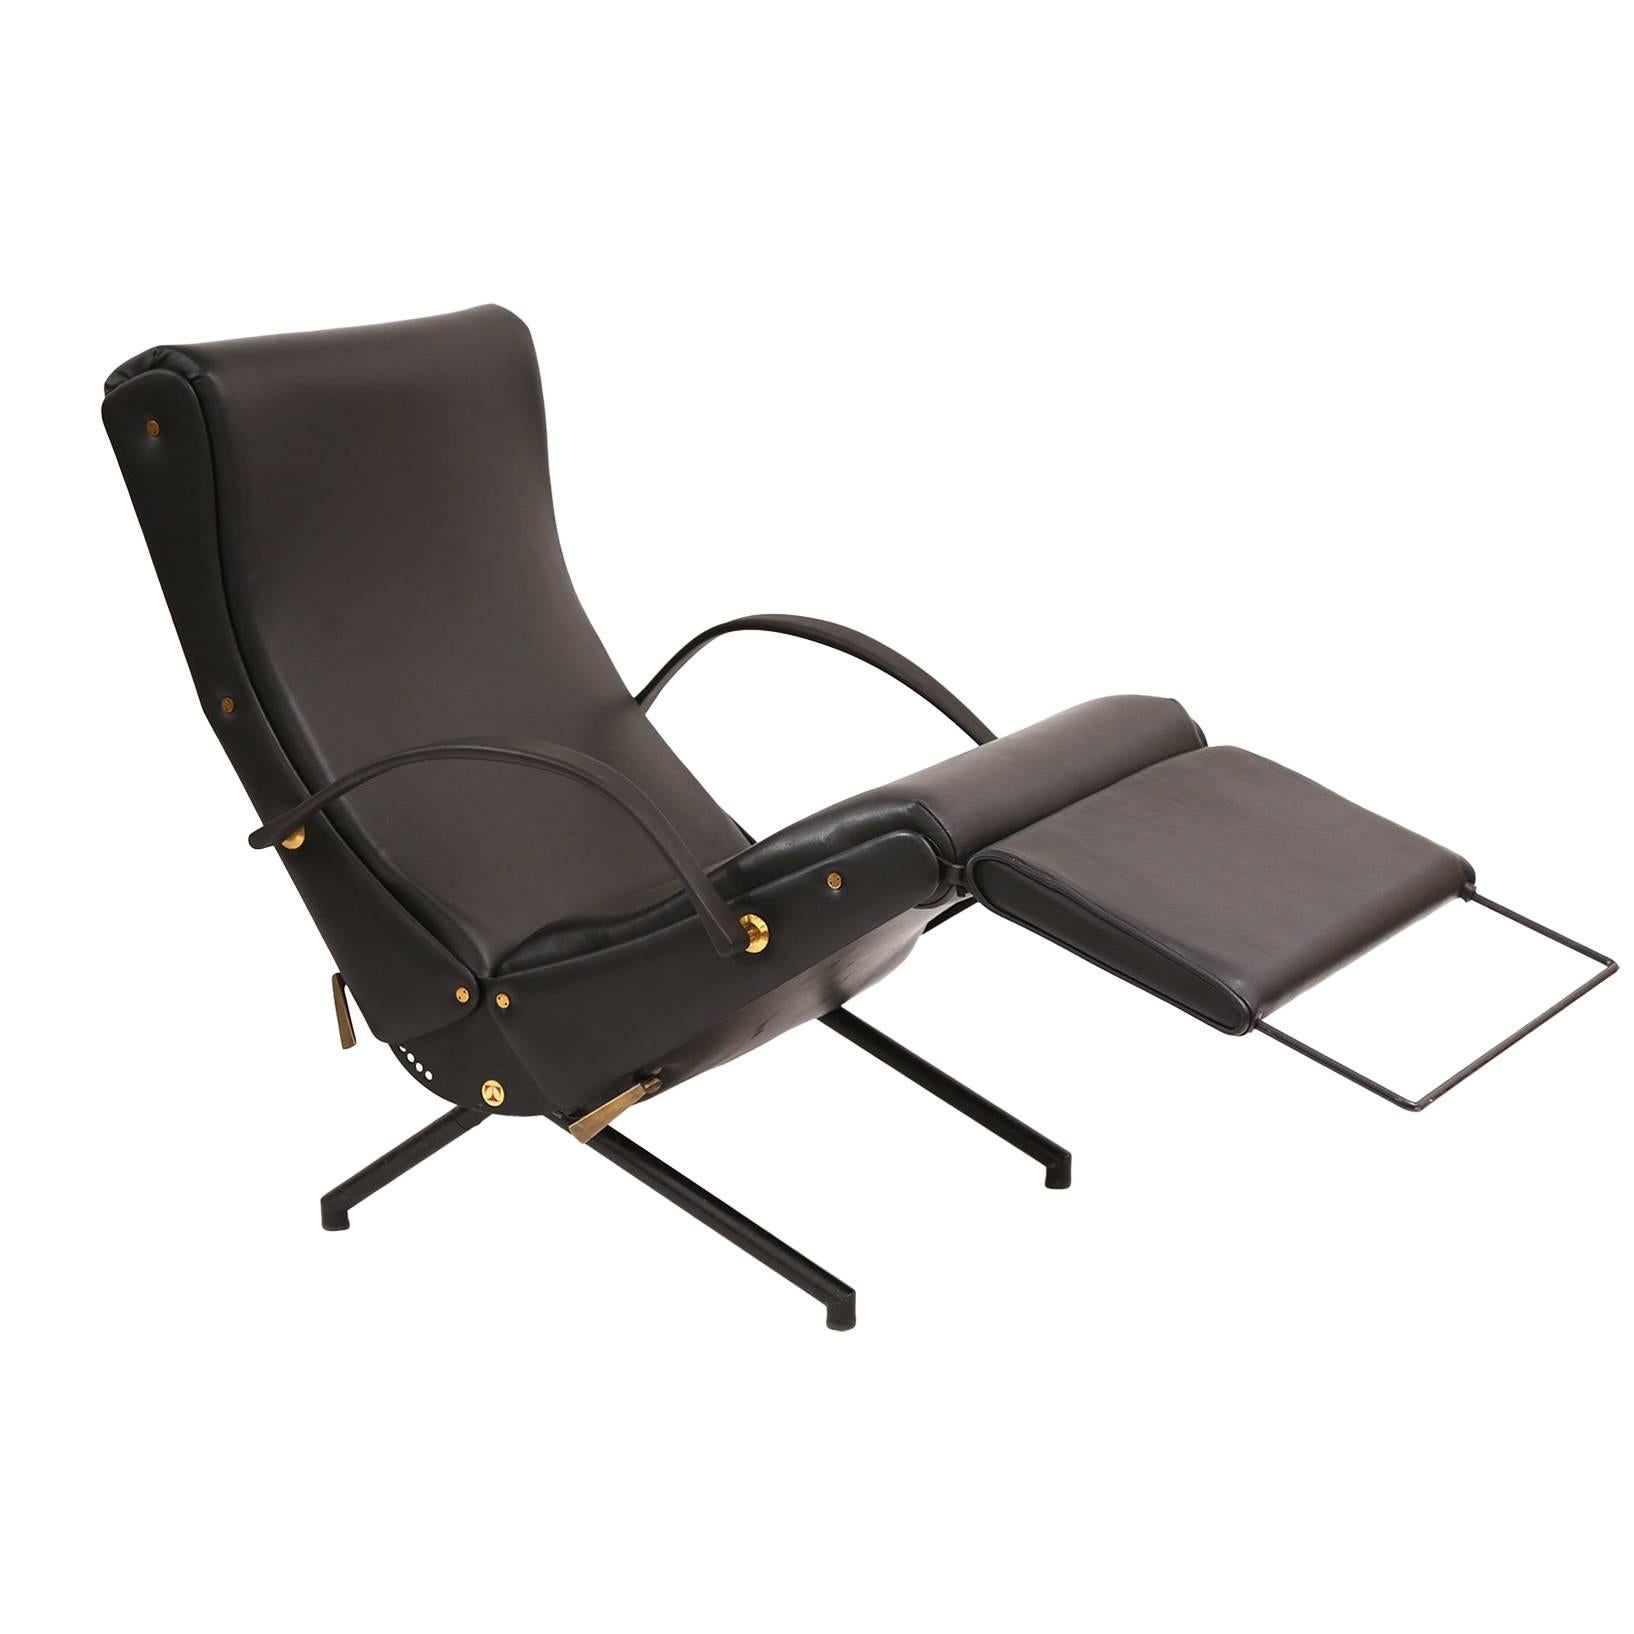 Osvaldo Borsani for Tecno P40 Convertible Lounge Chair